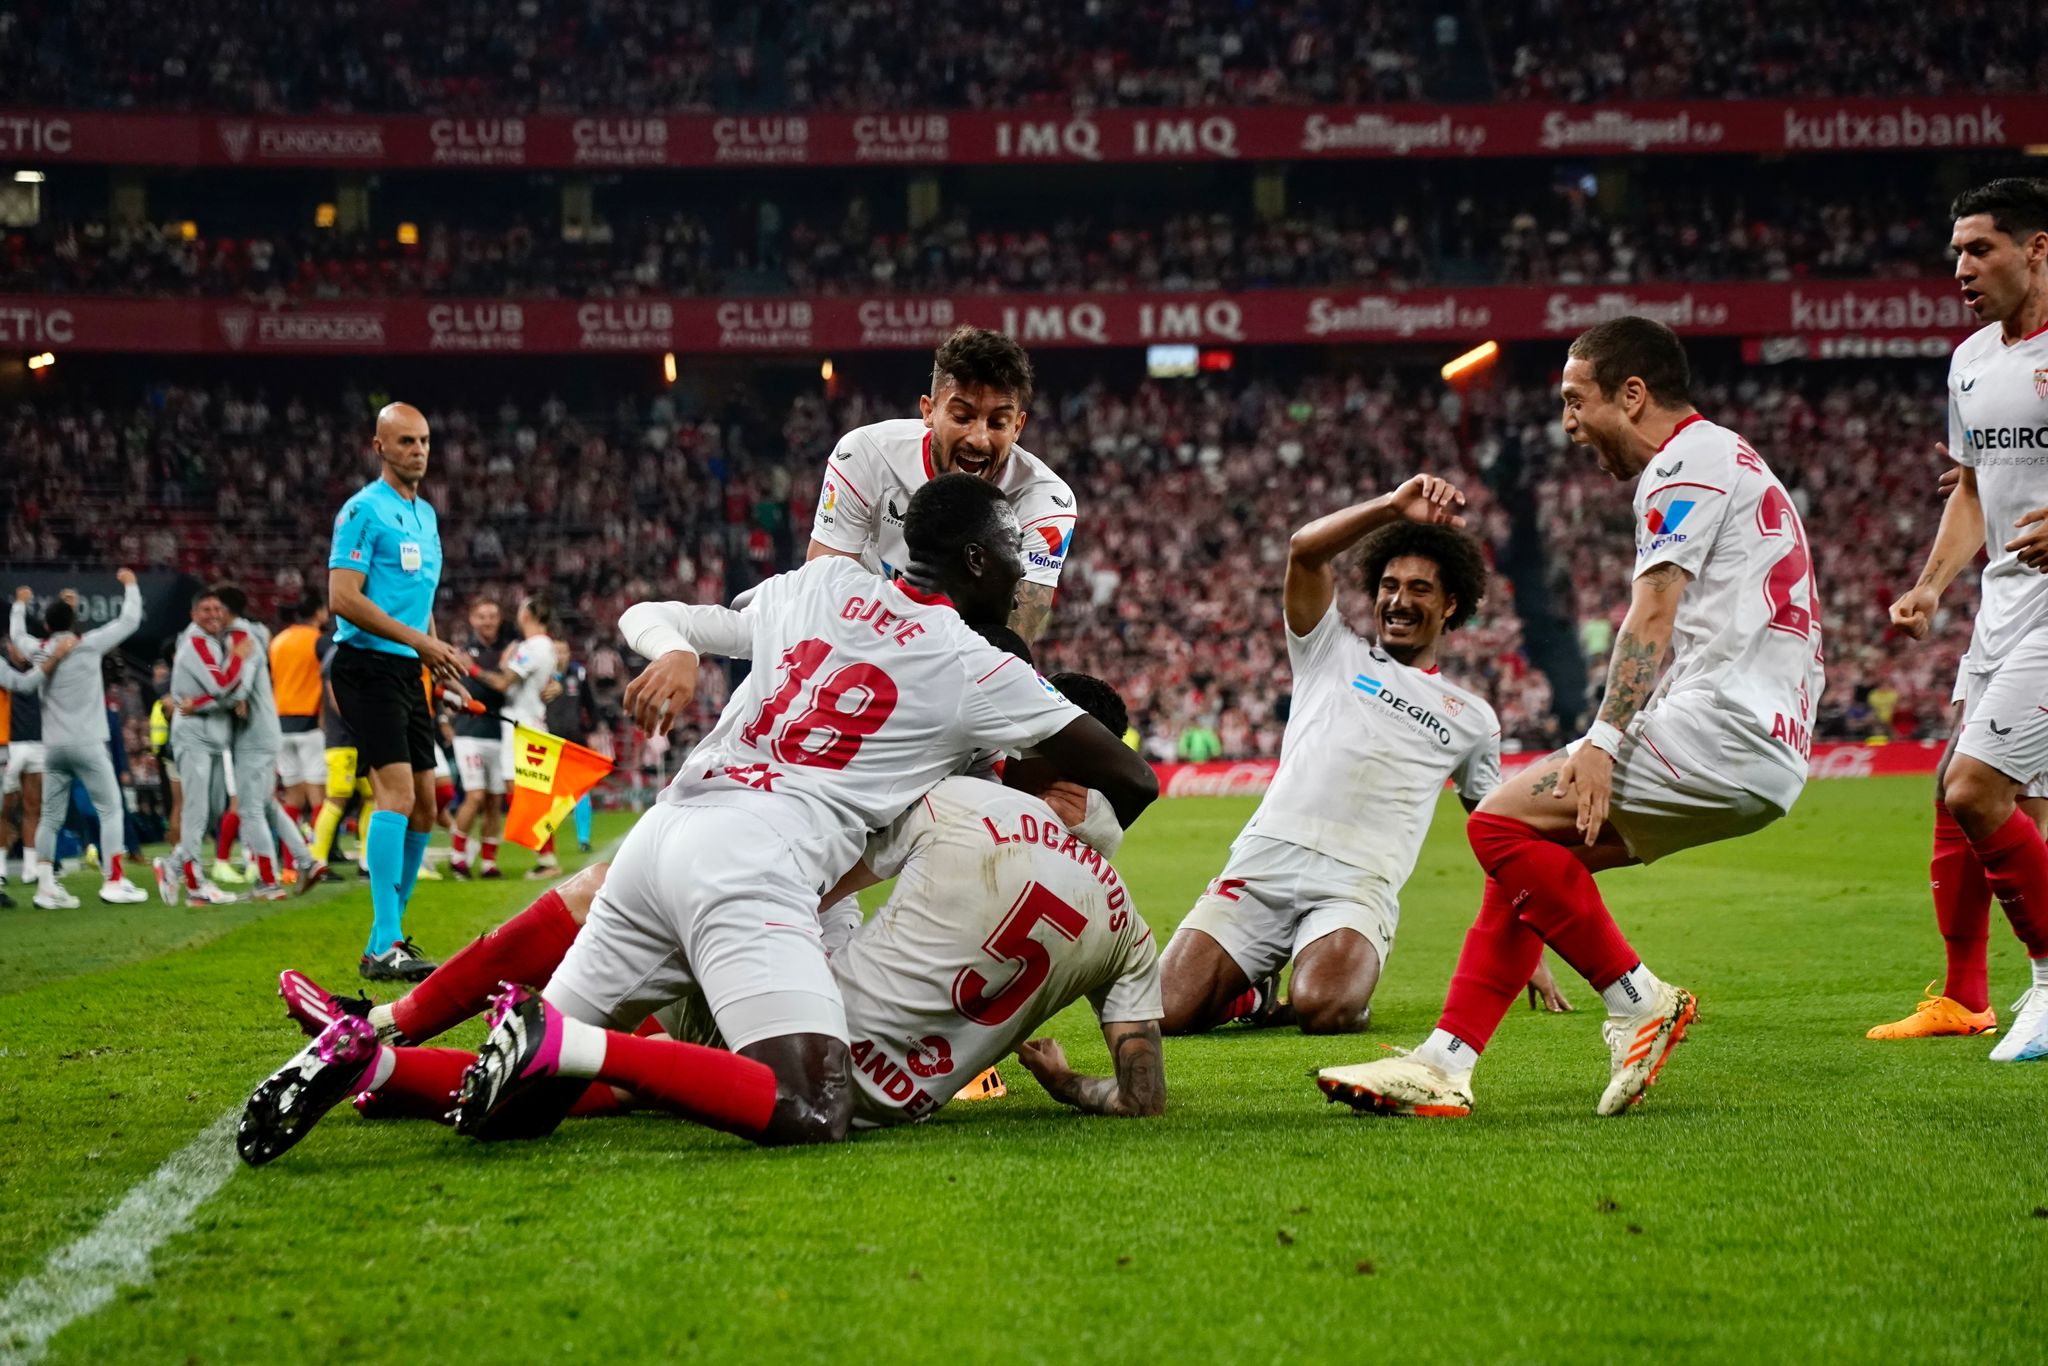 Sevilla FC celebrate the win in San Mamés